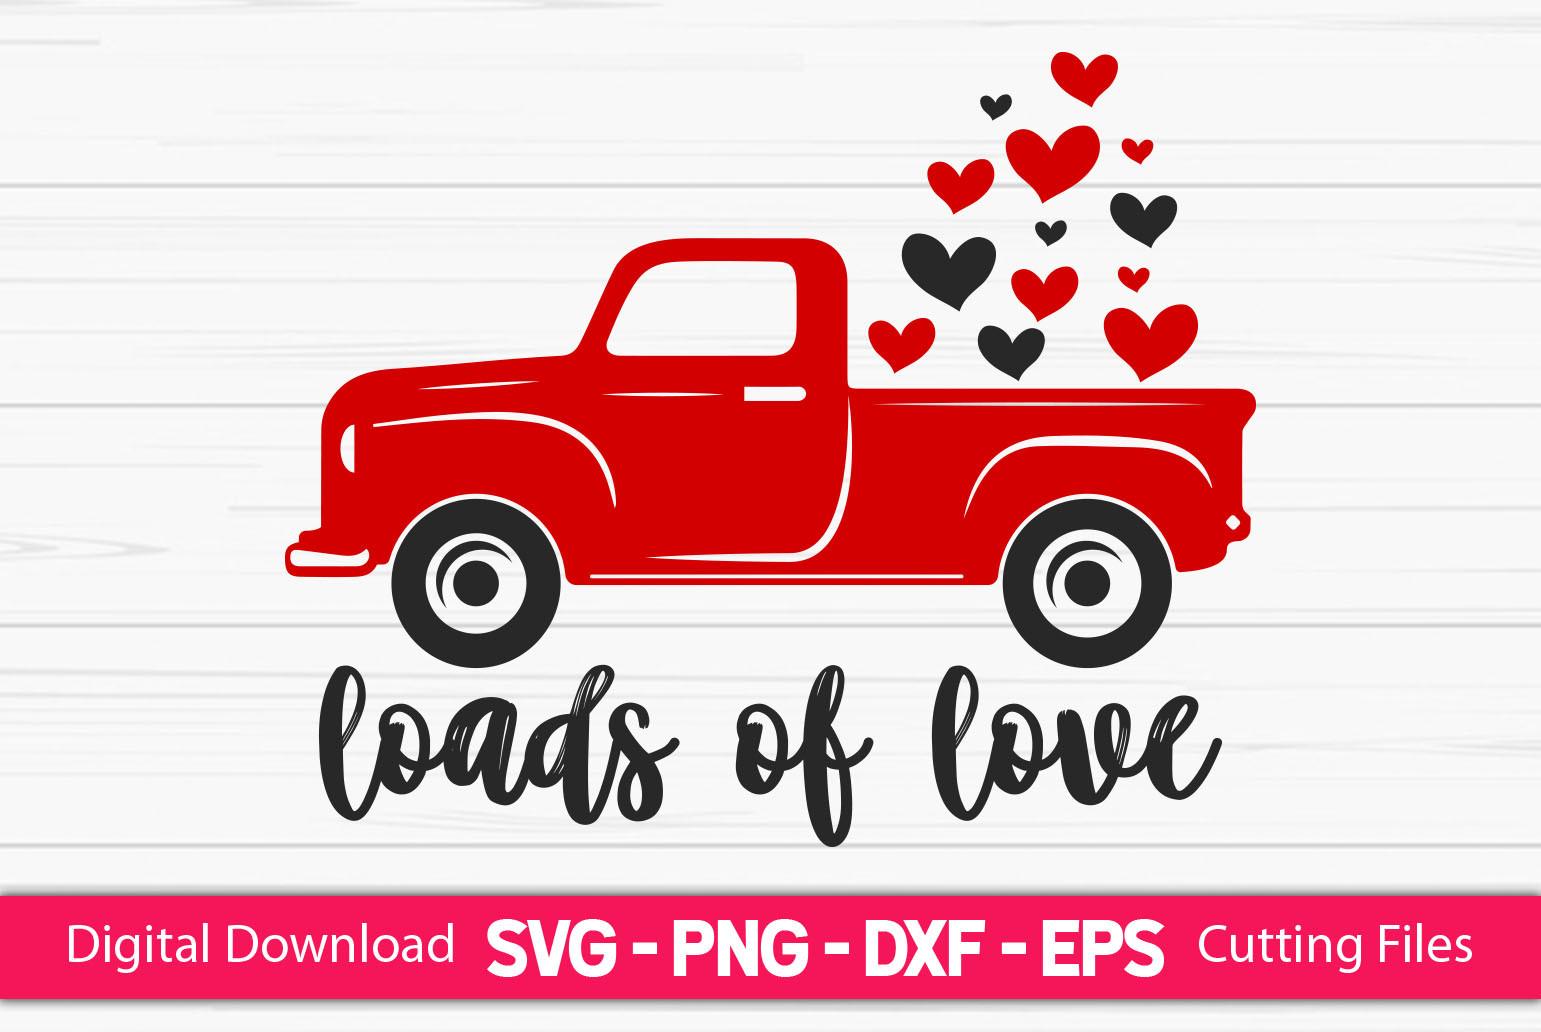 Loads of Love - Valentine's SVG